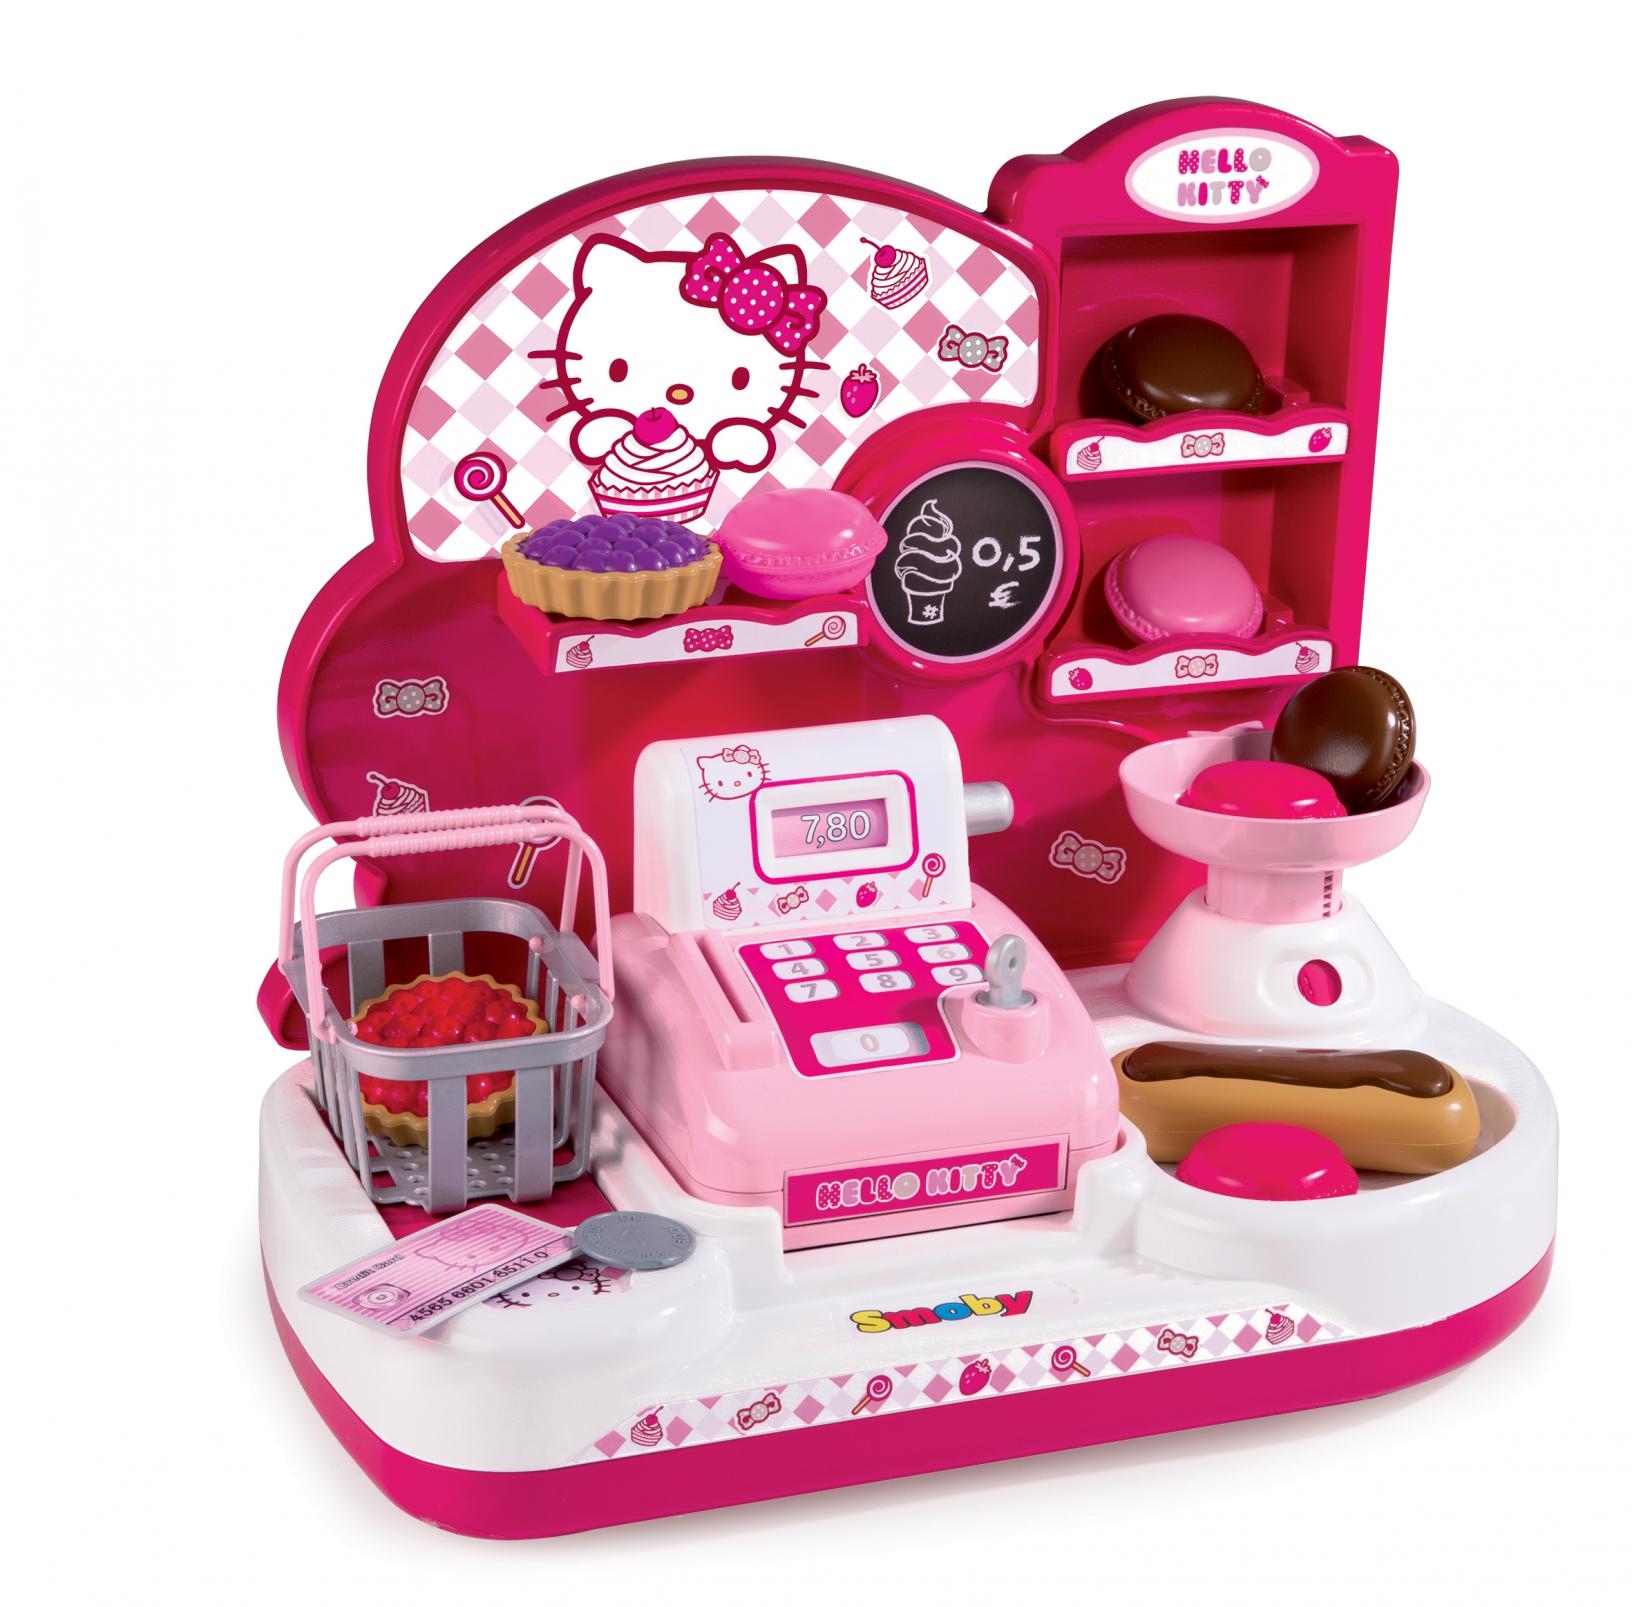 Hello Kitty obchod s pokladnou s otvírací kasou - Kliknutím na obrázek zavřete